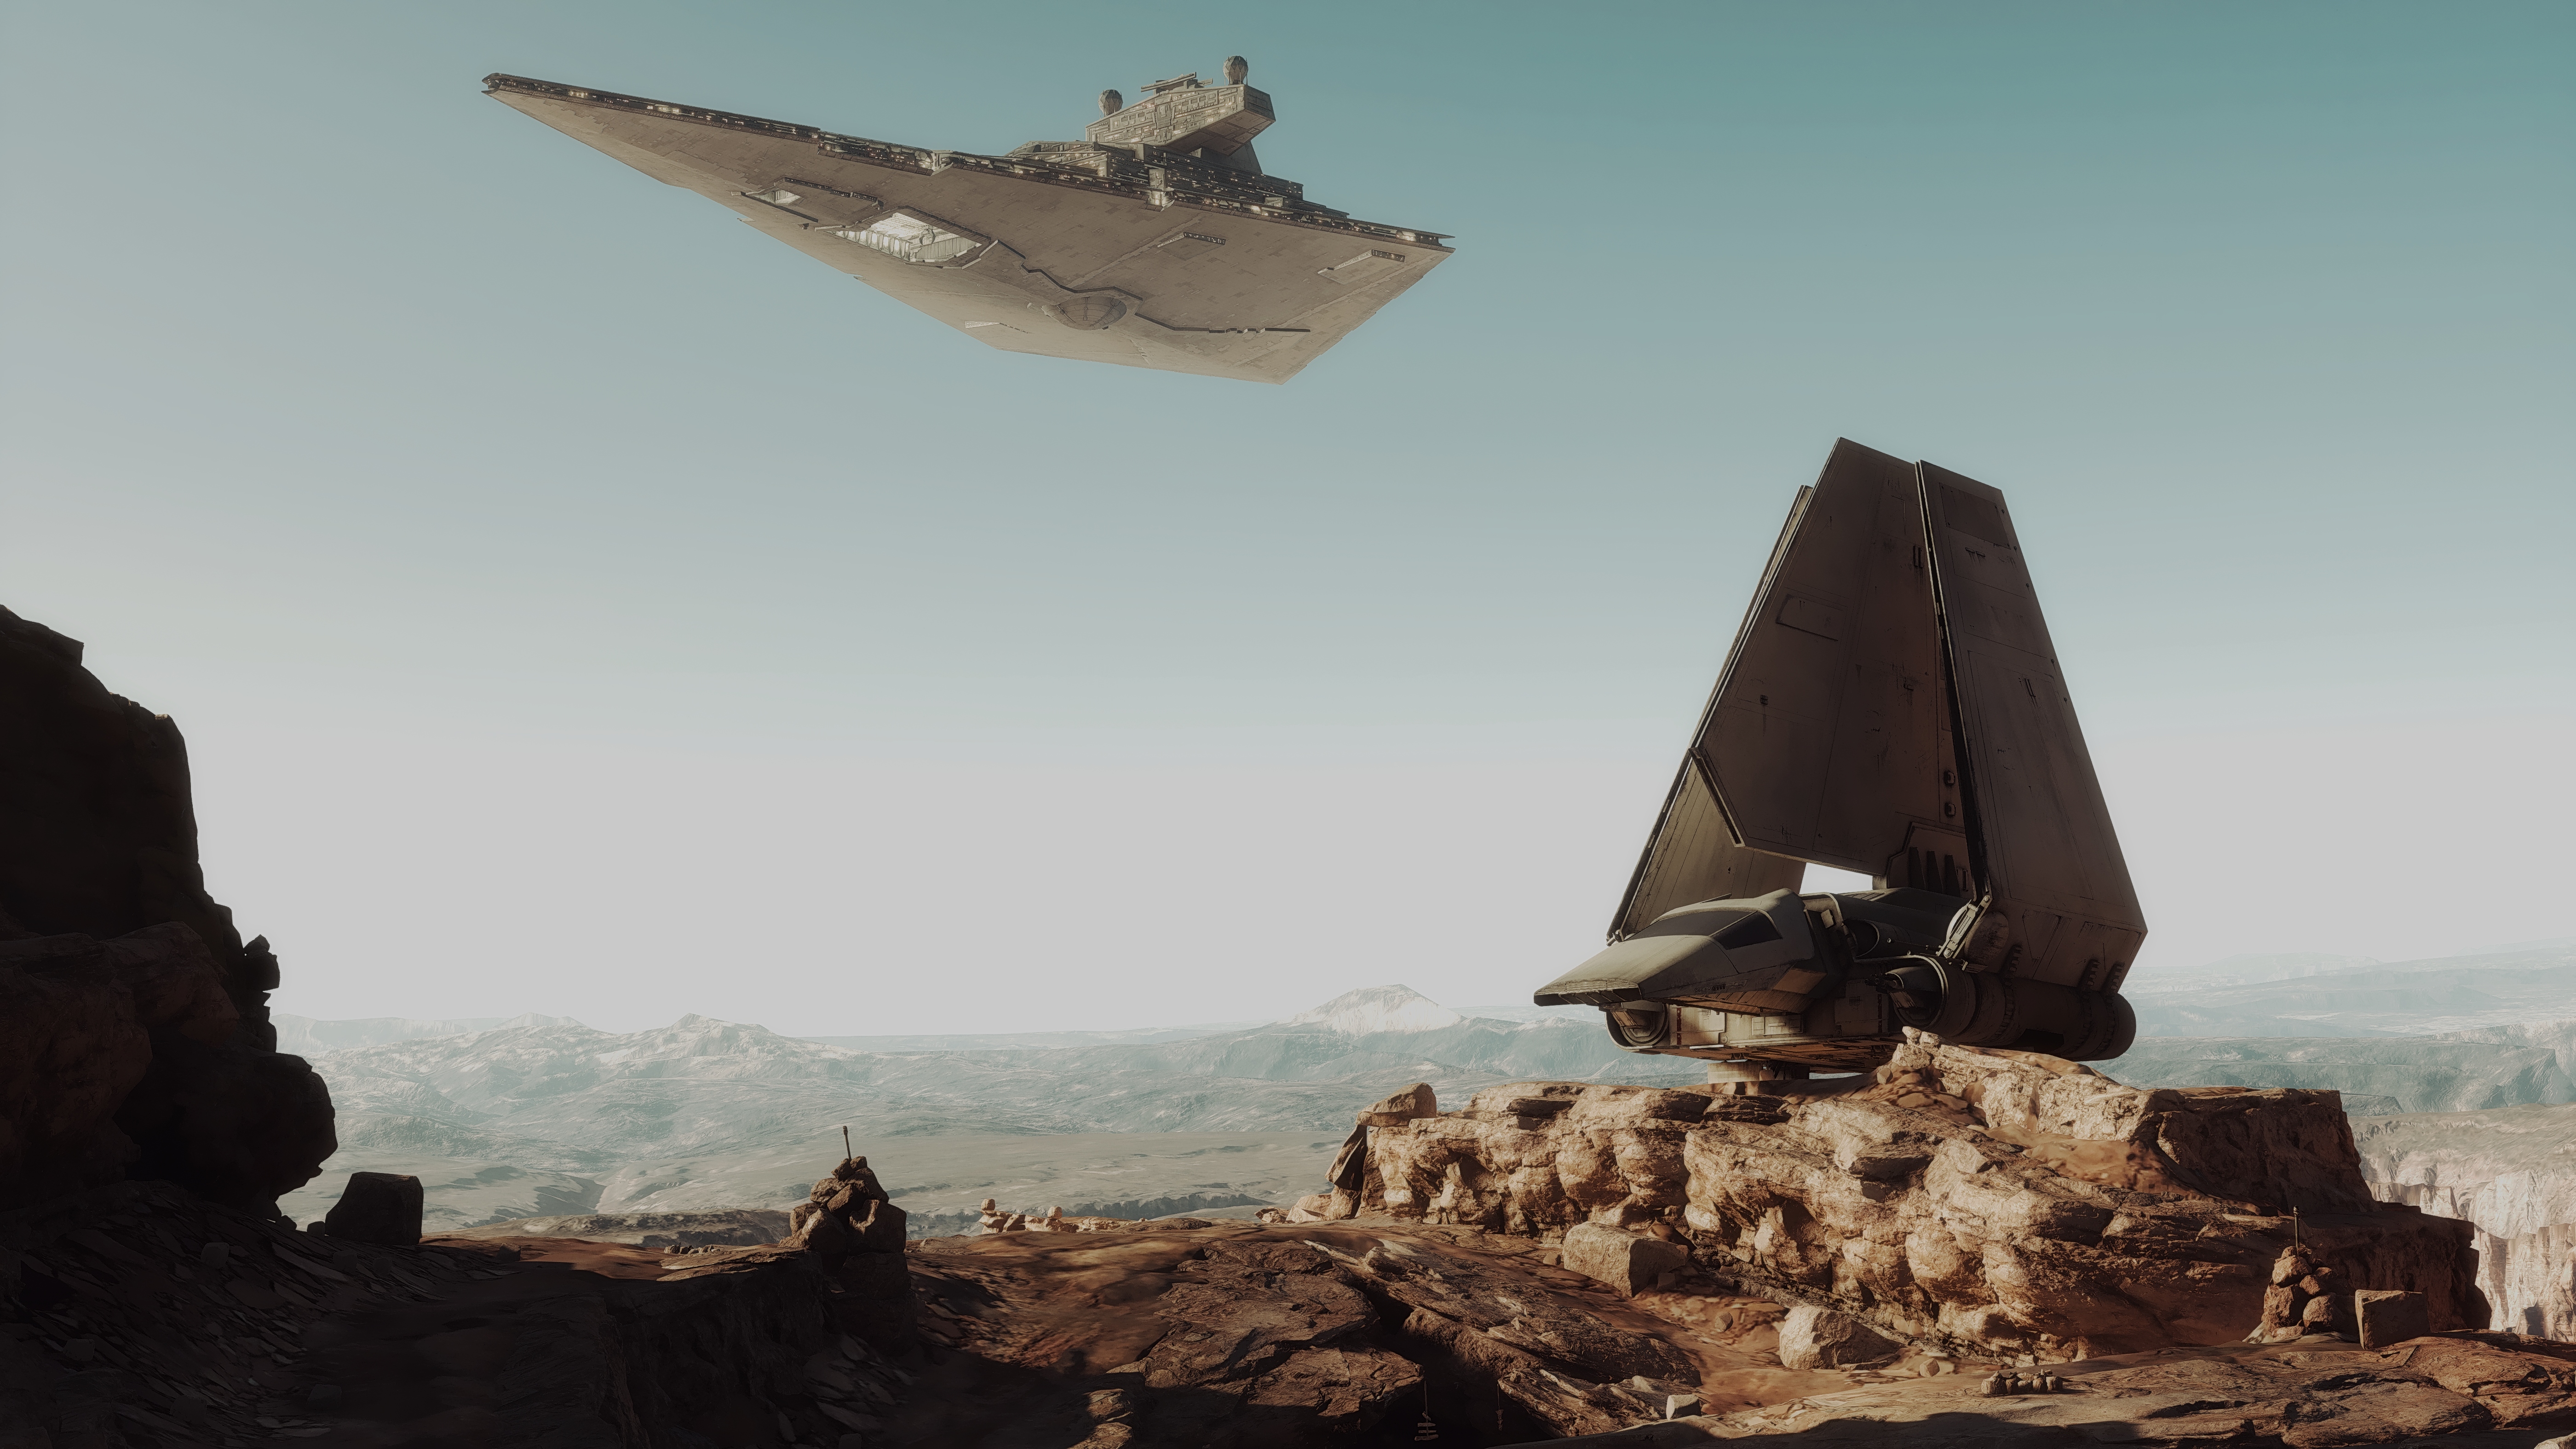 star wars battlefront (2015), video game, star destroyer, star wars